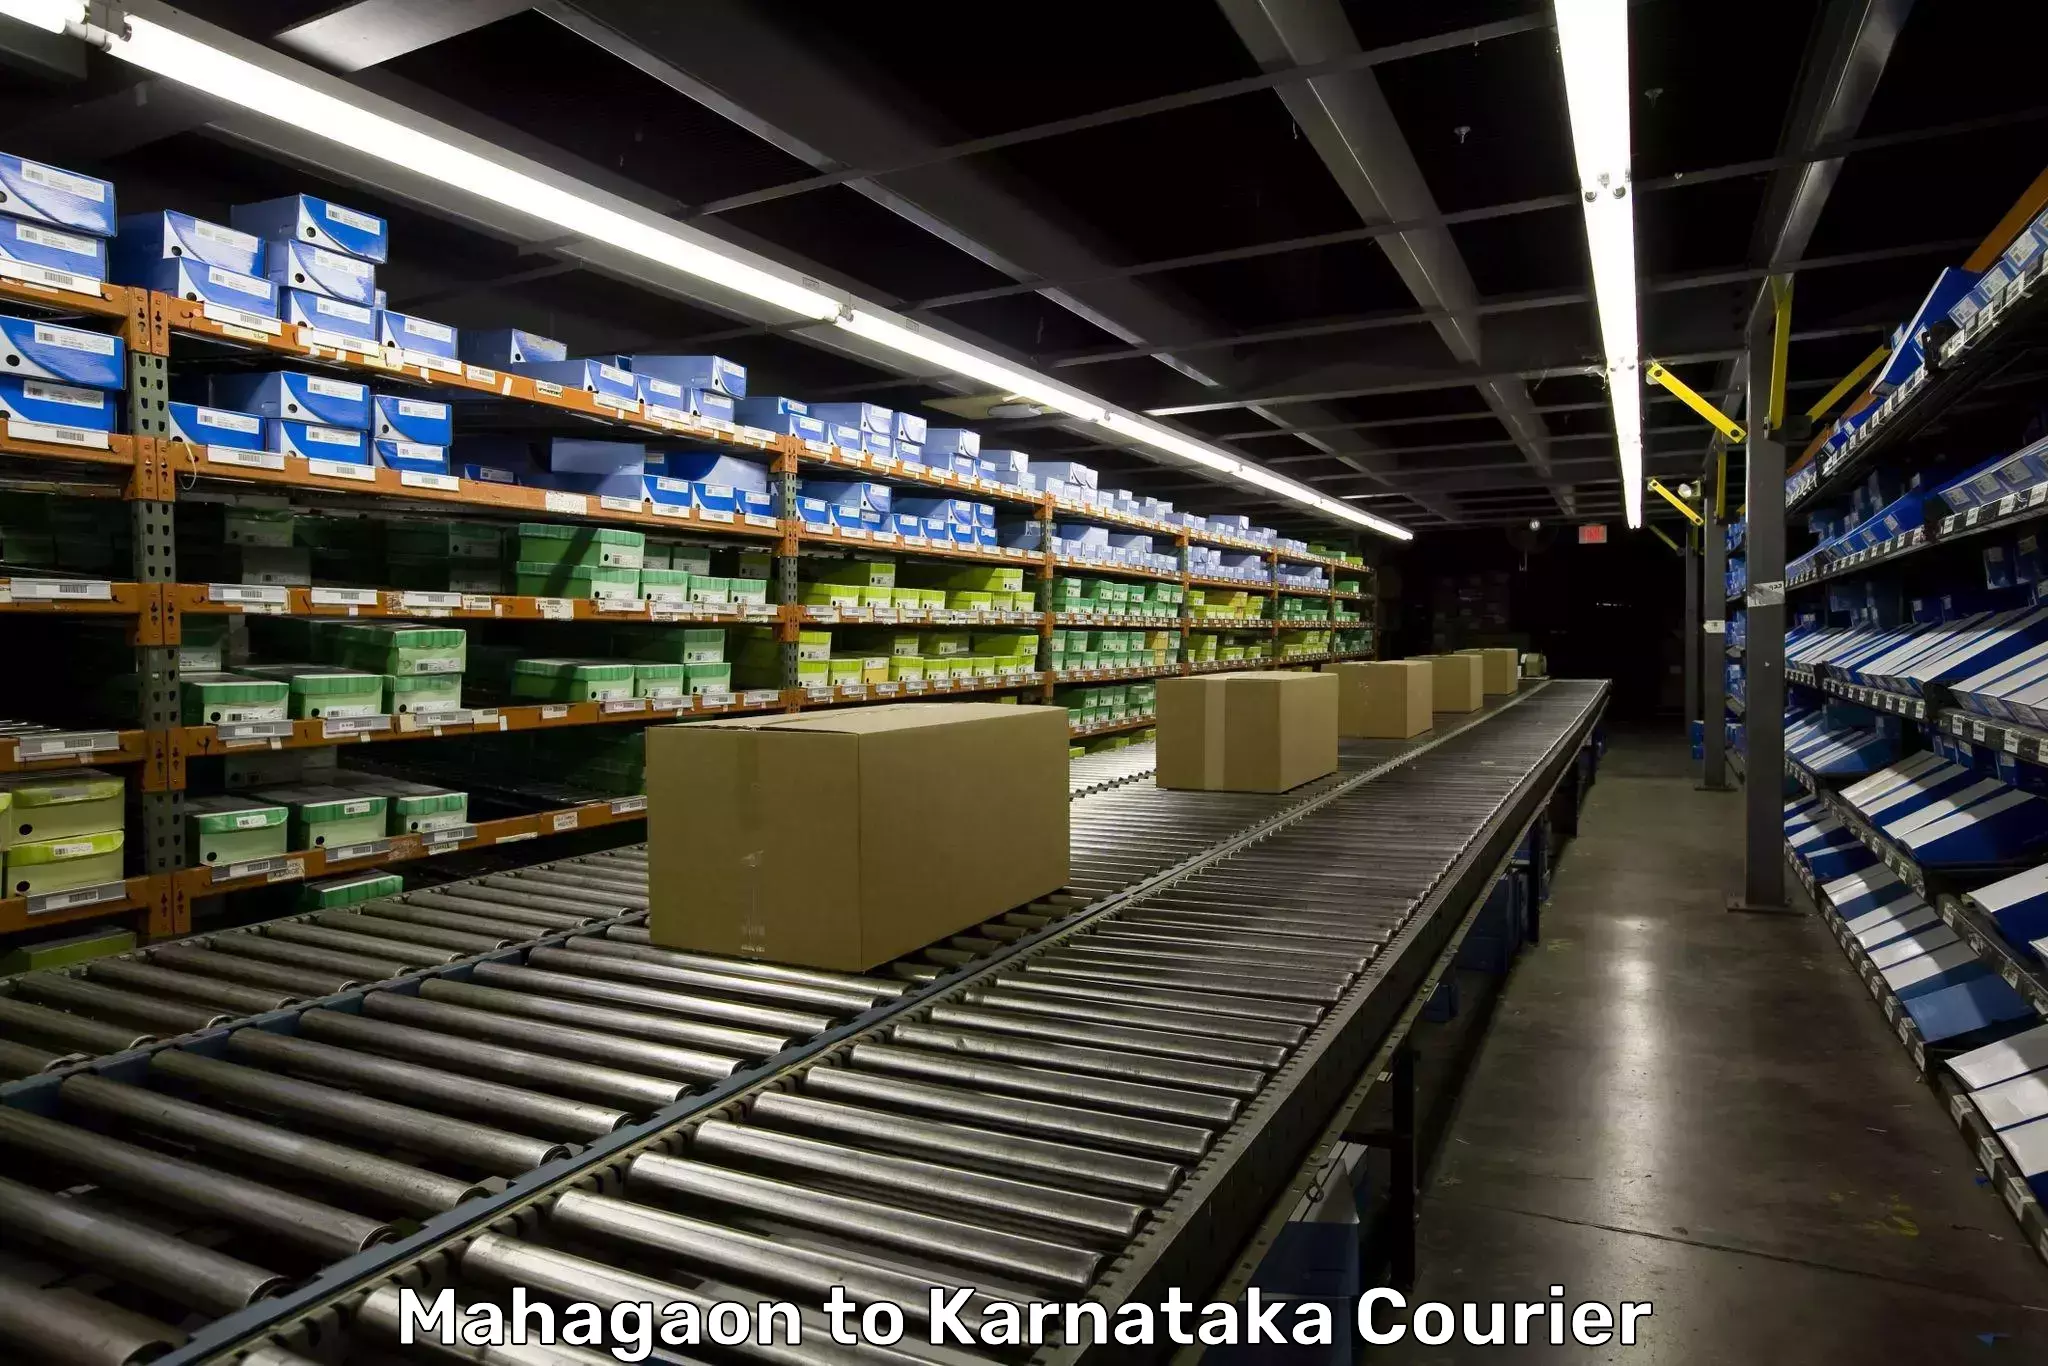 Baggage shipping experts Mahagaon to Karnataka